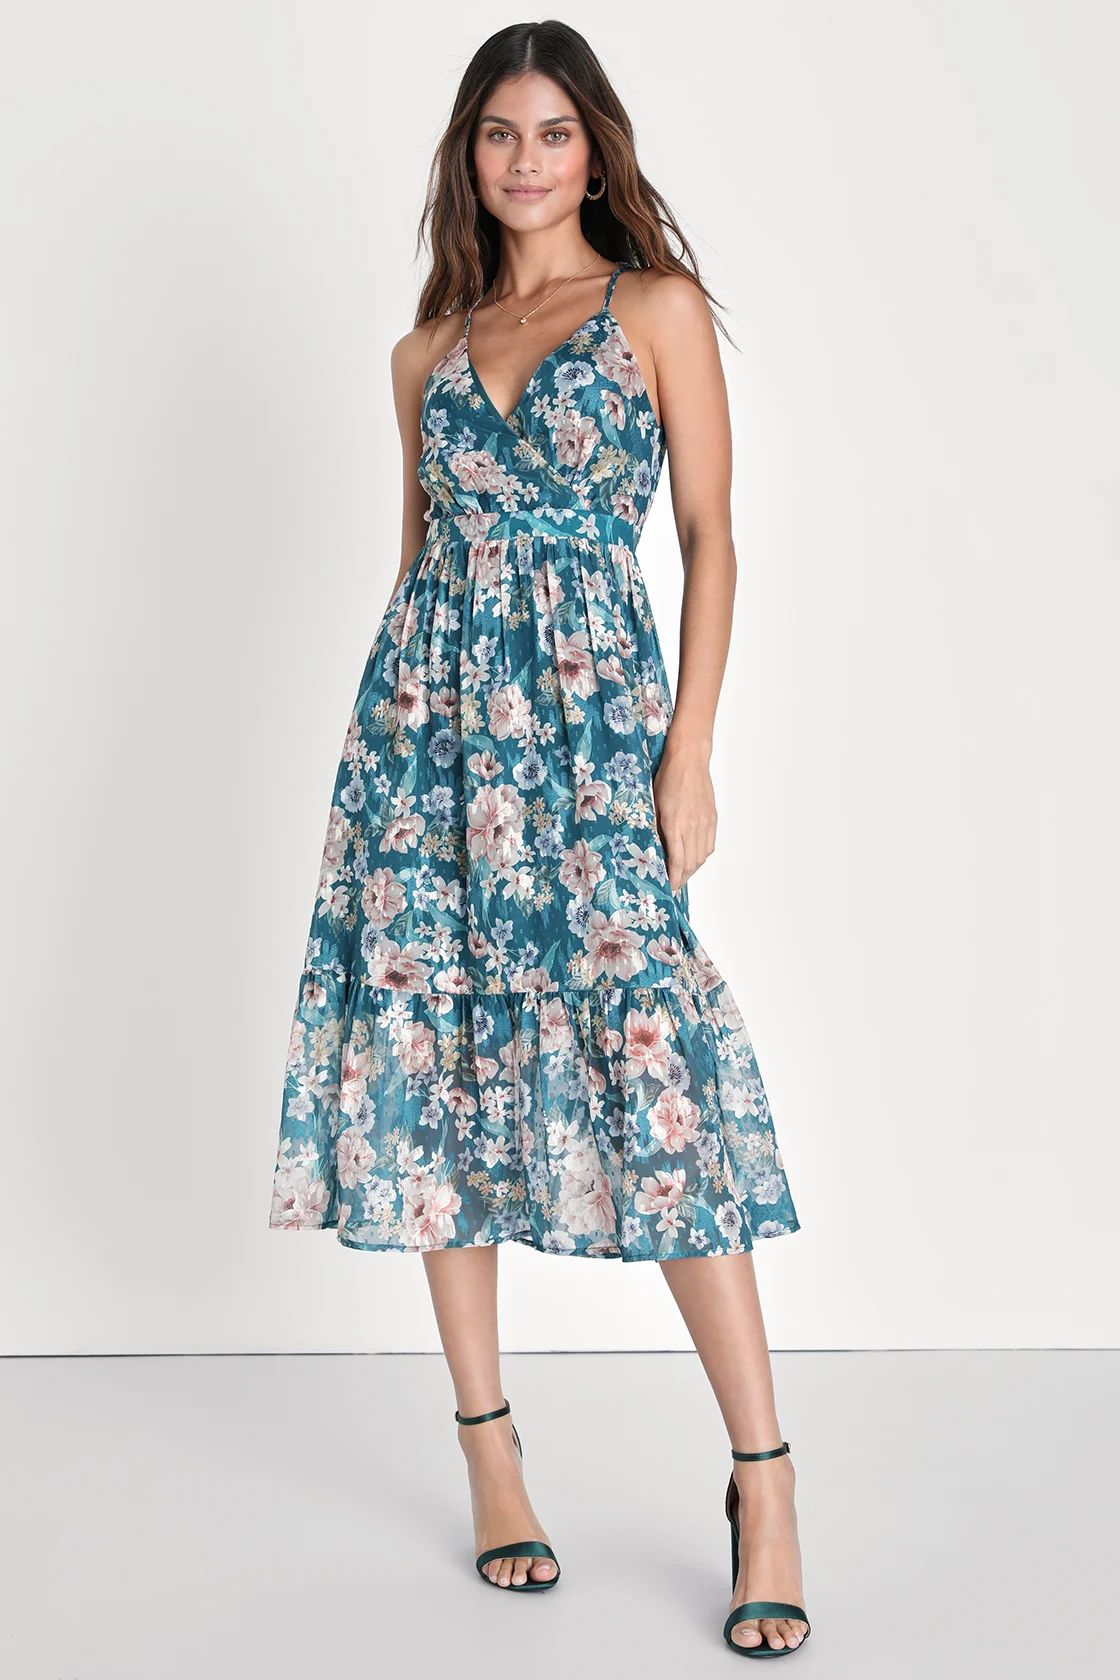 Pleasant Presence Teal Blue Floral Jacquard Tie-Back Midi Dress | Lulus (US)